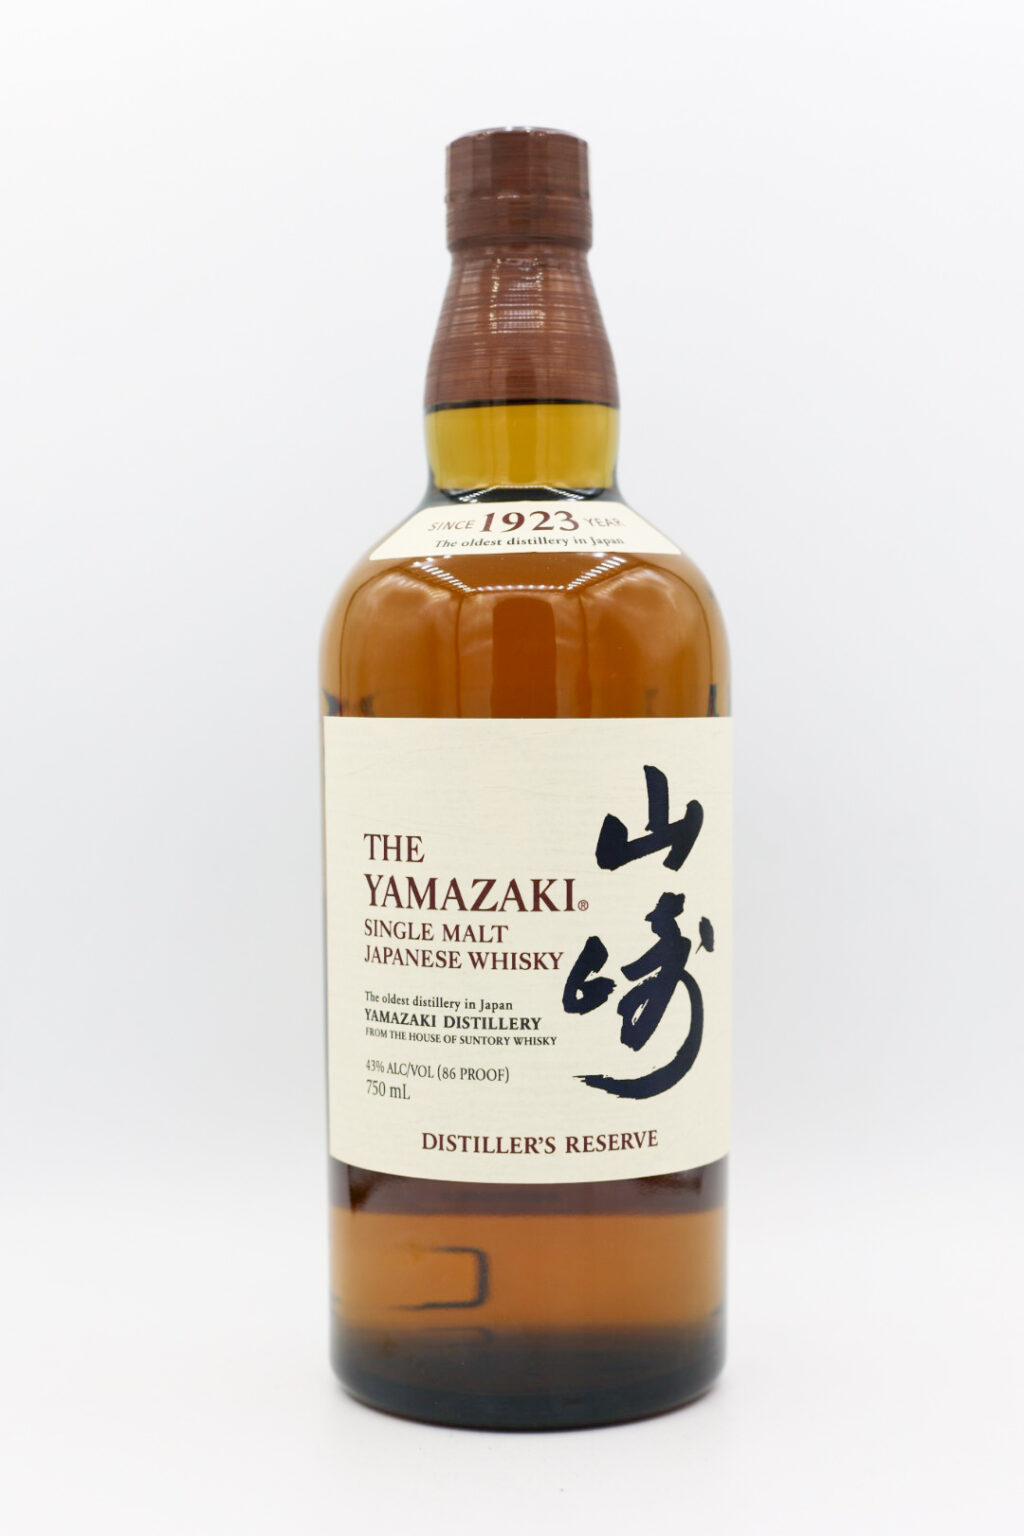 The Yamazaki Distiller’s Reserve Single Malt